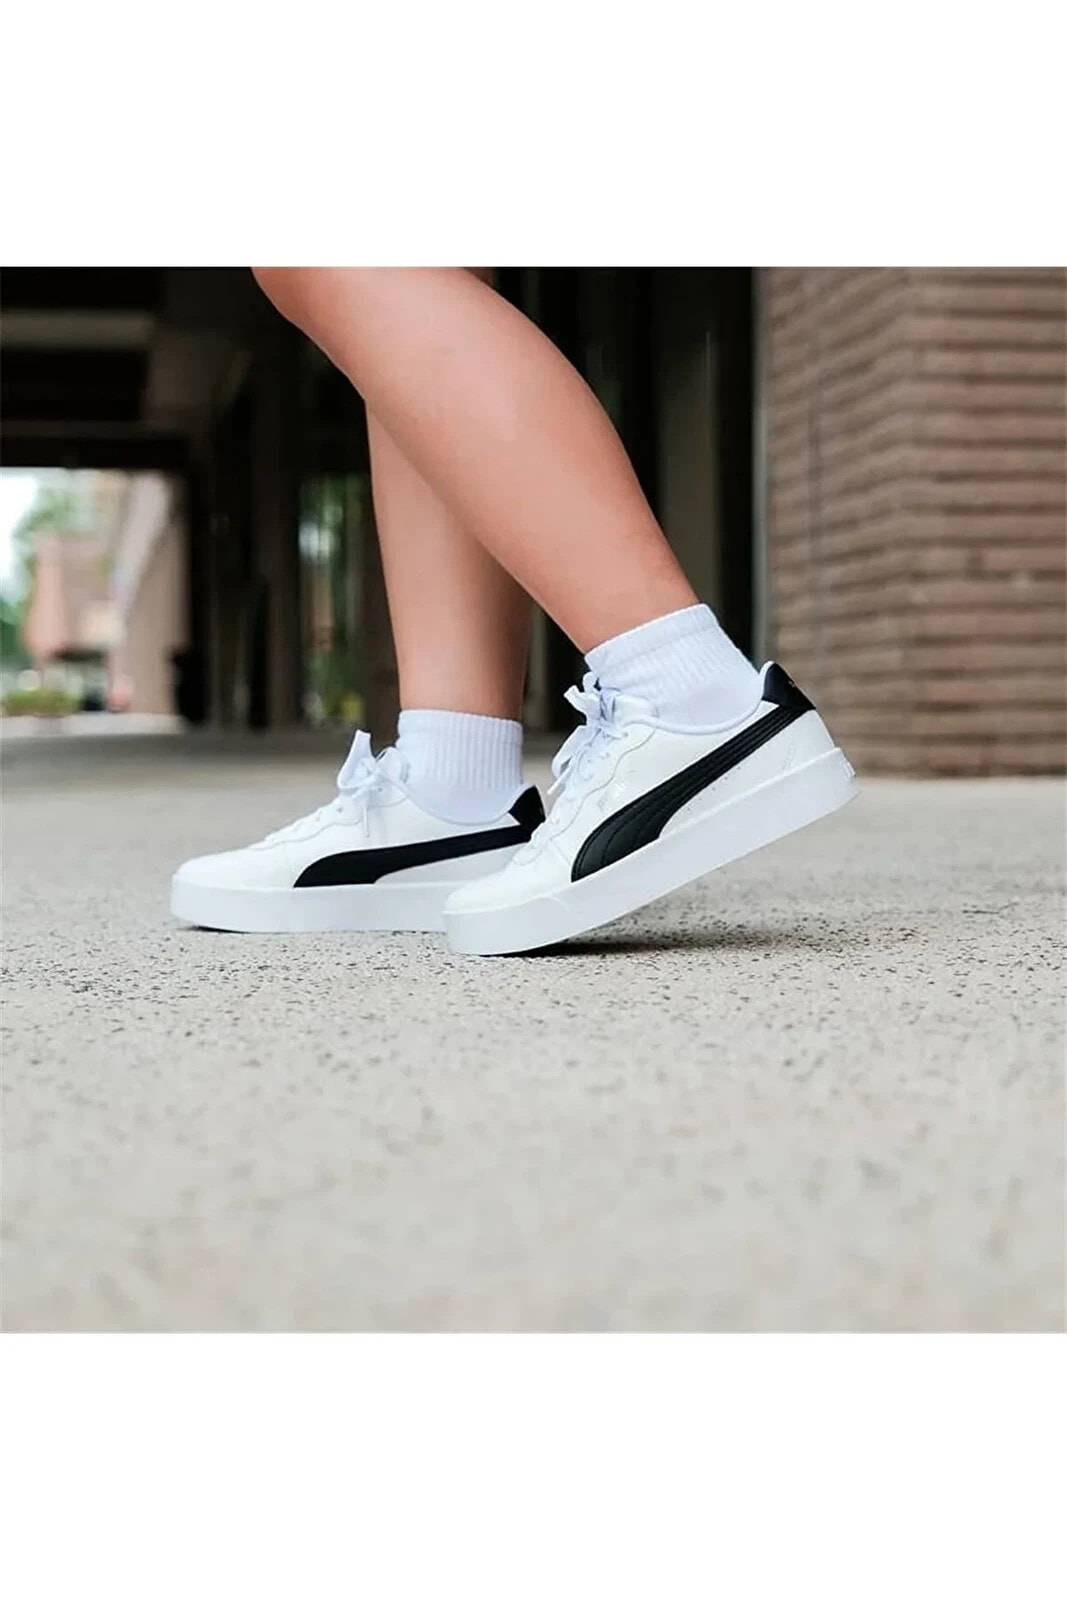 Skye Clean - Kadın Deri Beyaz-siyah Spor Ayakkabı - 380147 04